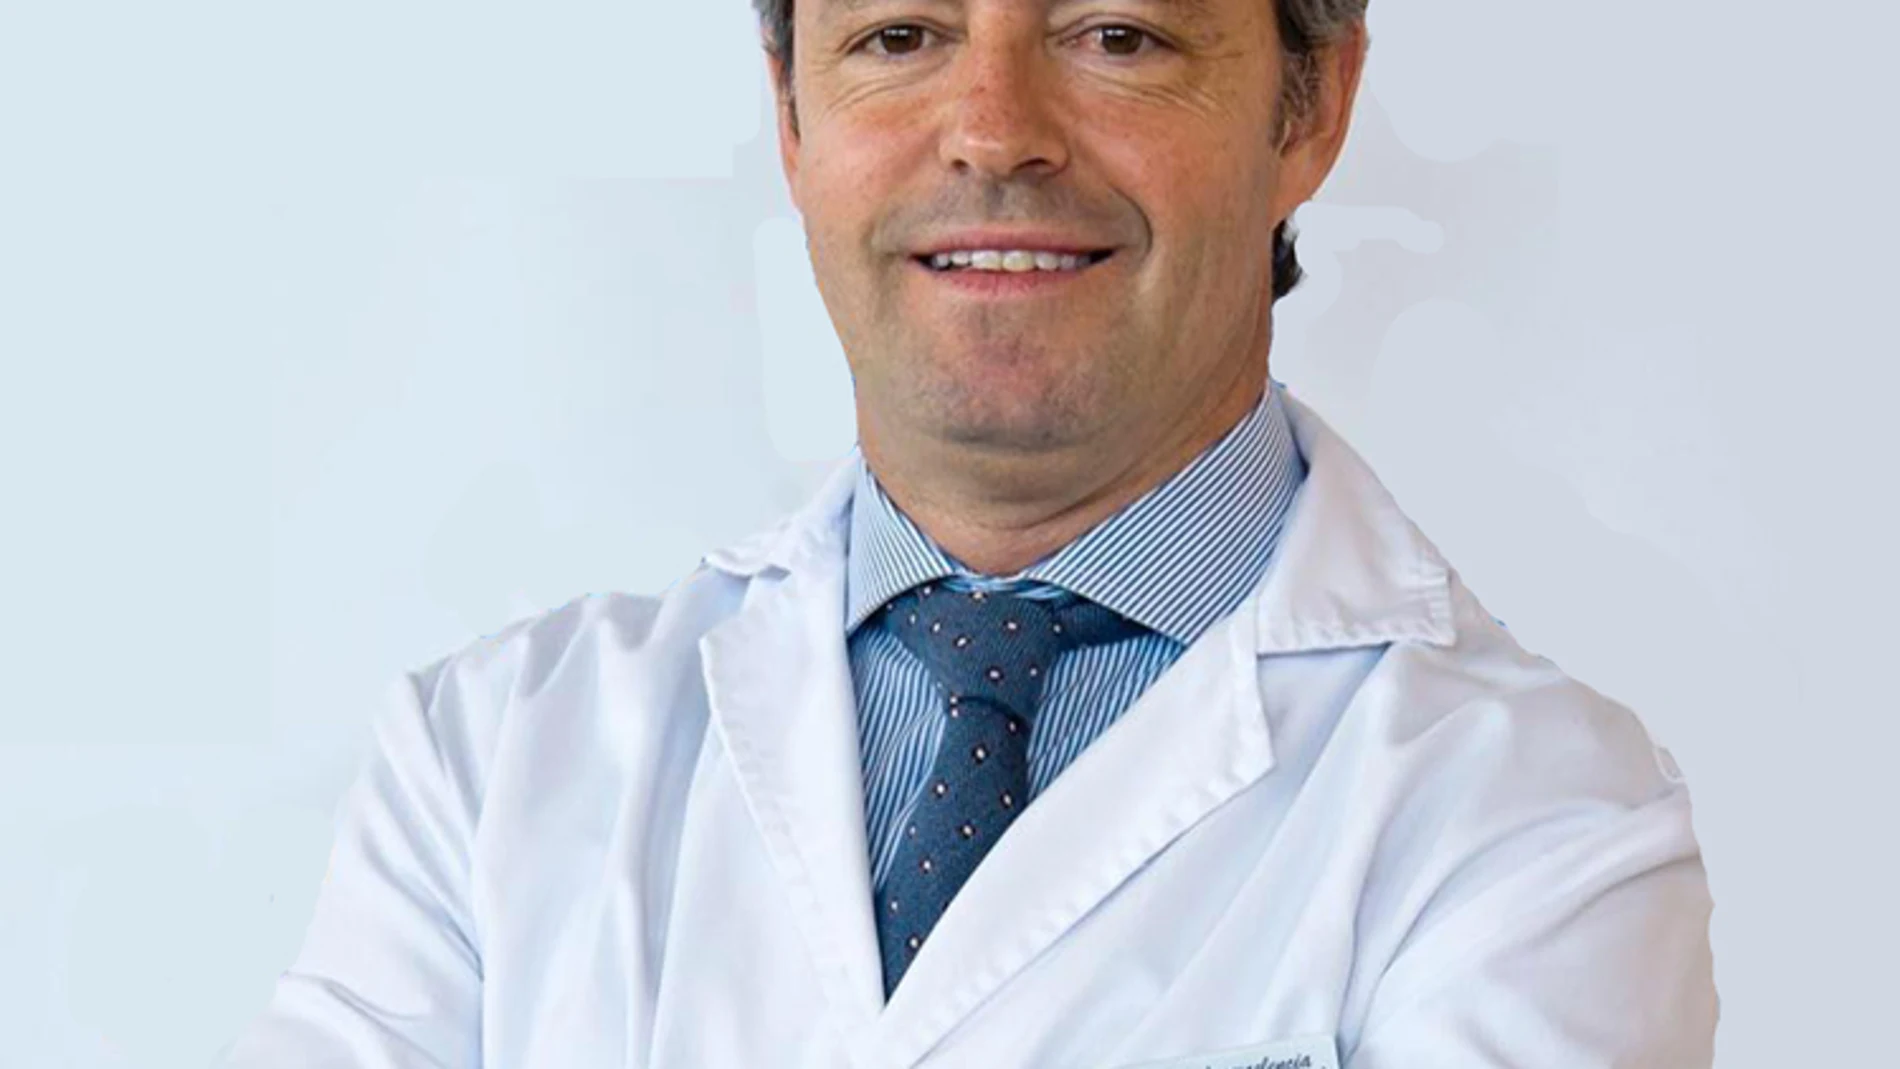 Gontrand López-Nava es jefe de la Unidad de Endoscopia Bariátrica del Hospital HM Sanchinarro de Madrid